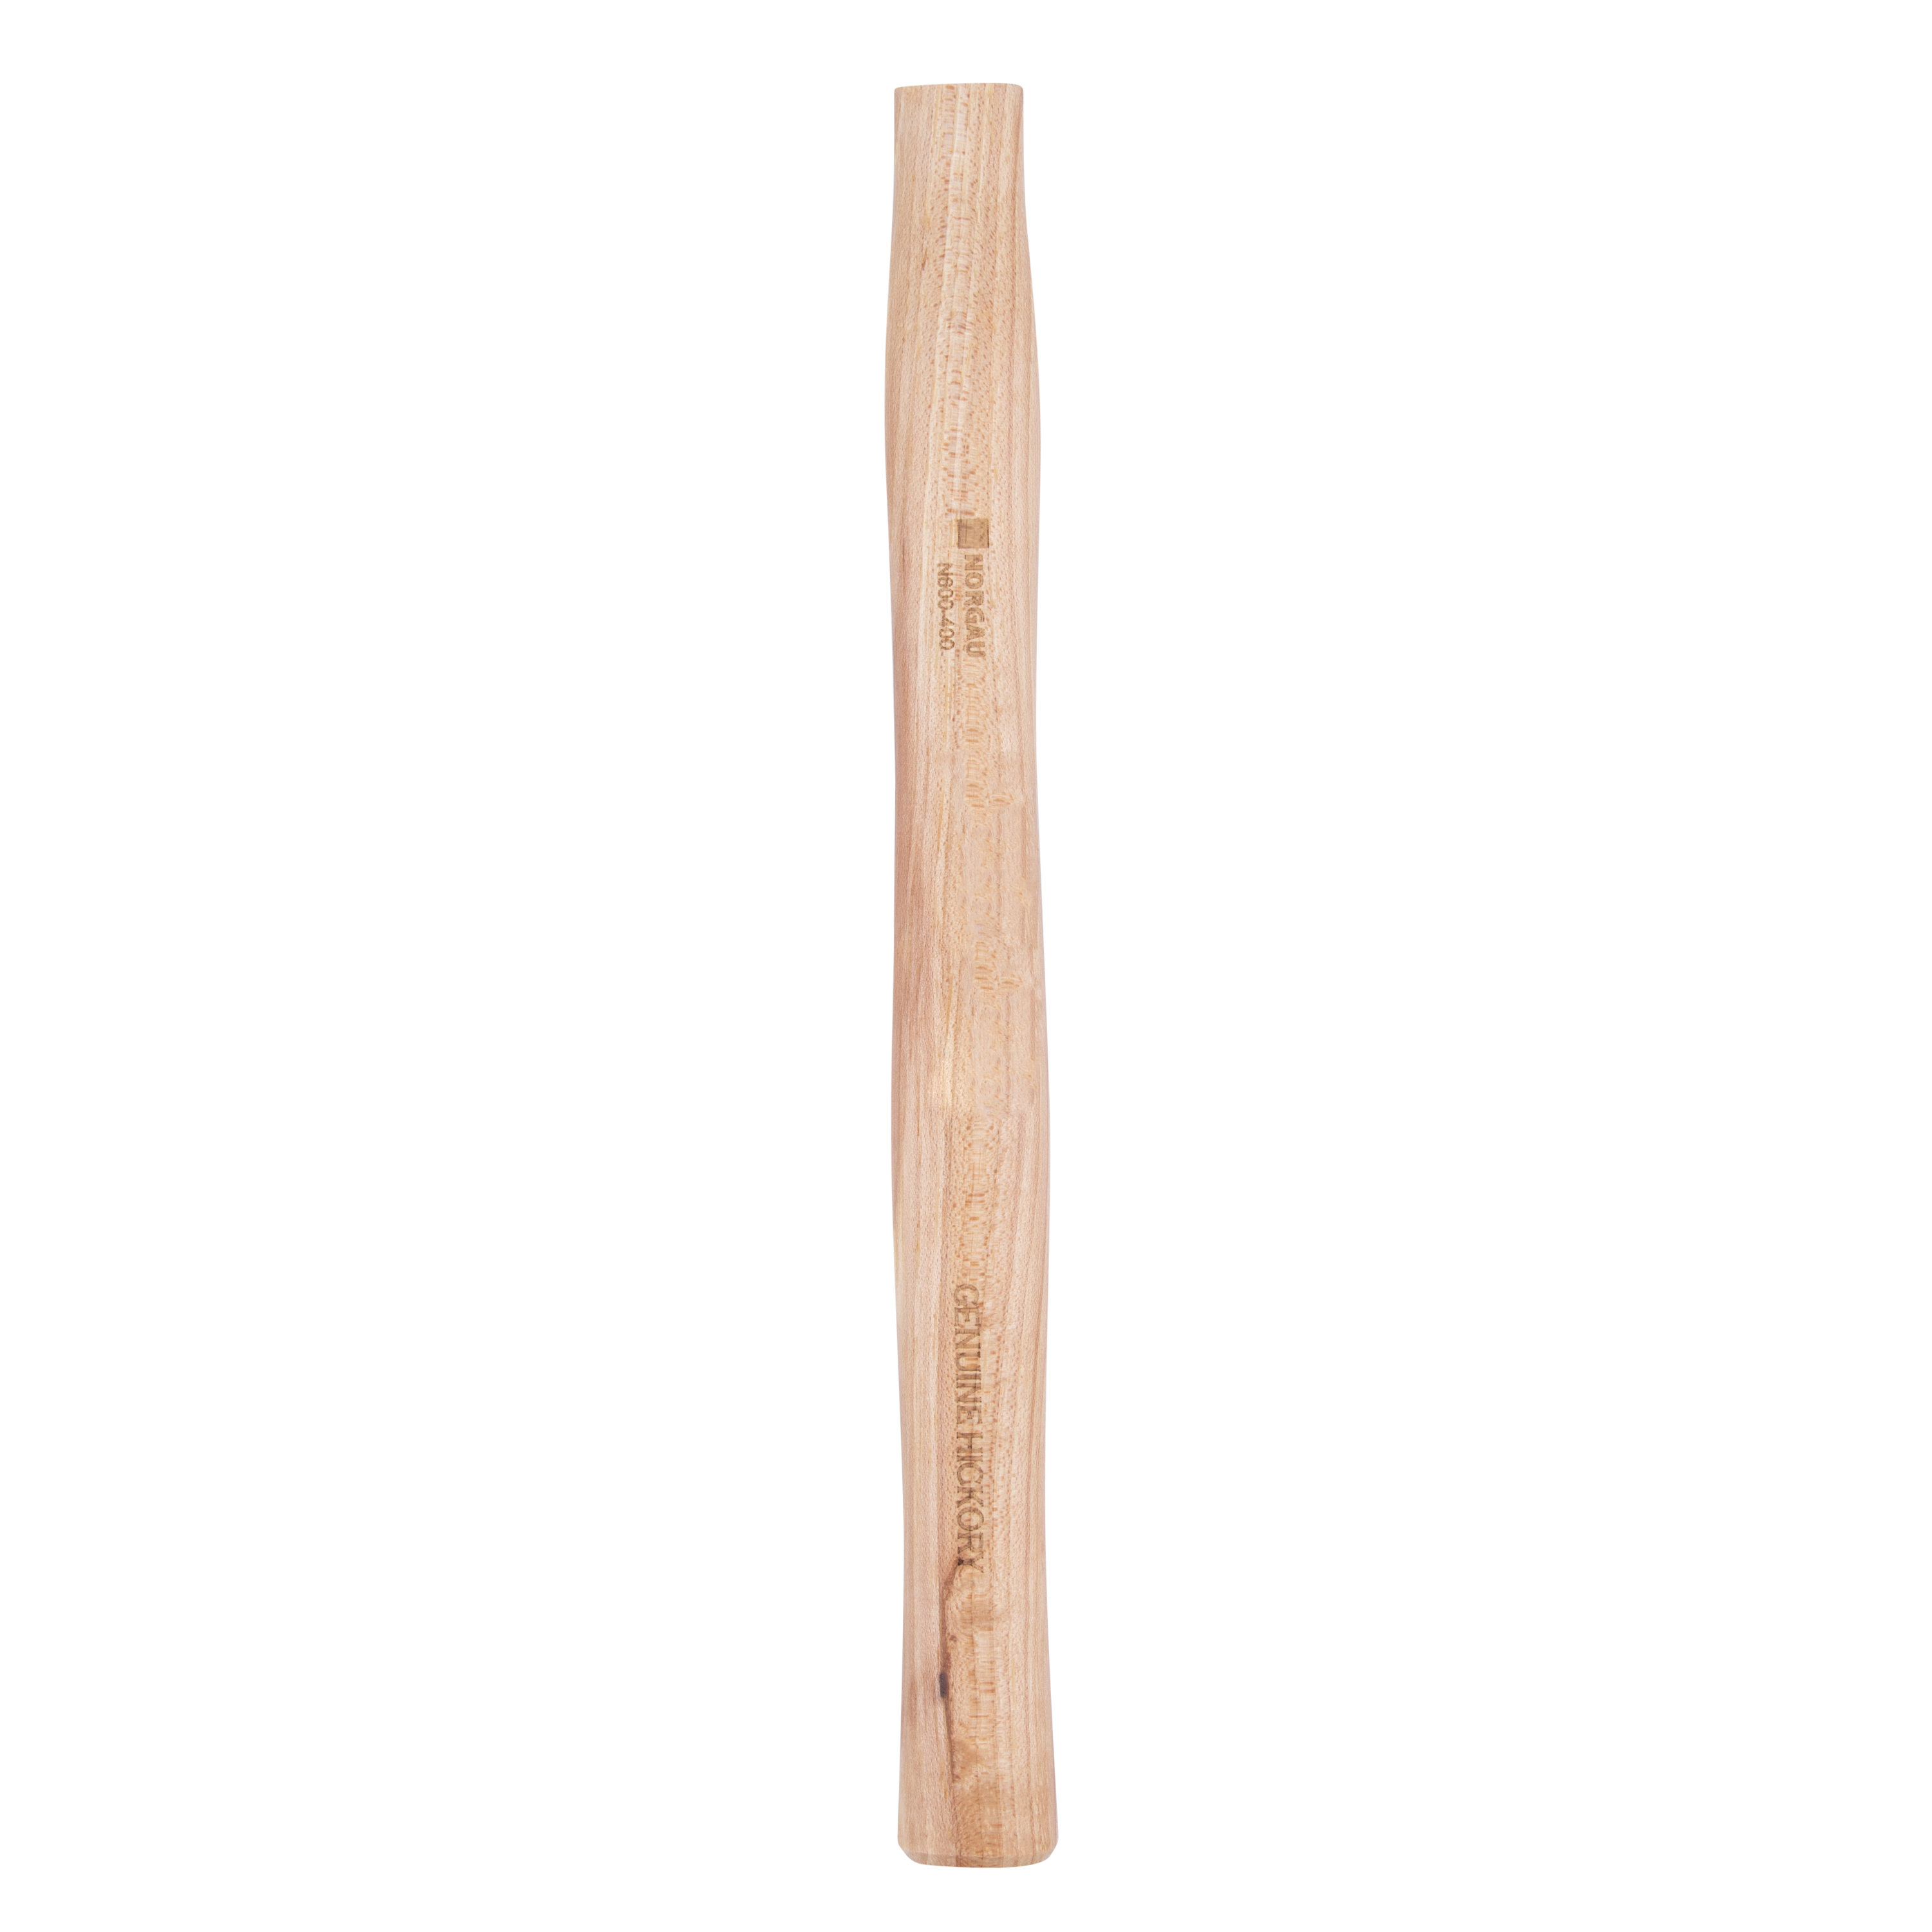 Рукоятка NORGAU Industrial запаснаядля молотка 400 г, из древесины гикори, 300 мм универсальная рукоятка для молотка кирки ооо агростройлидер